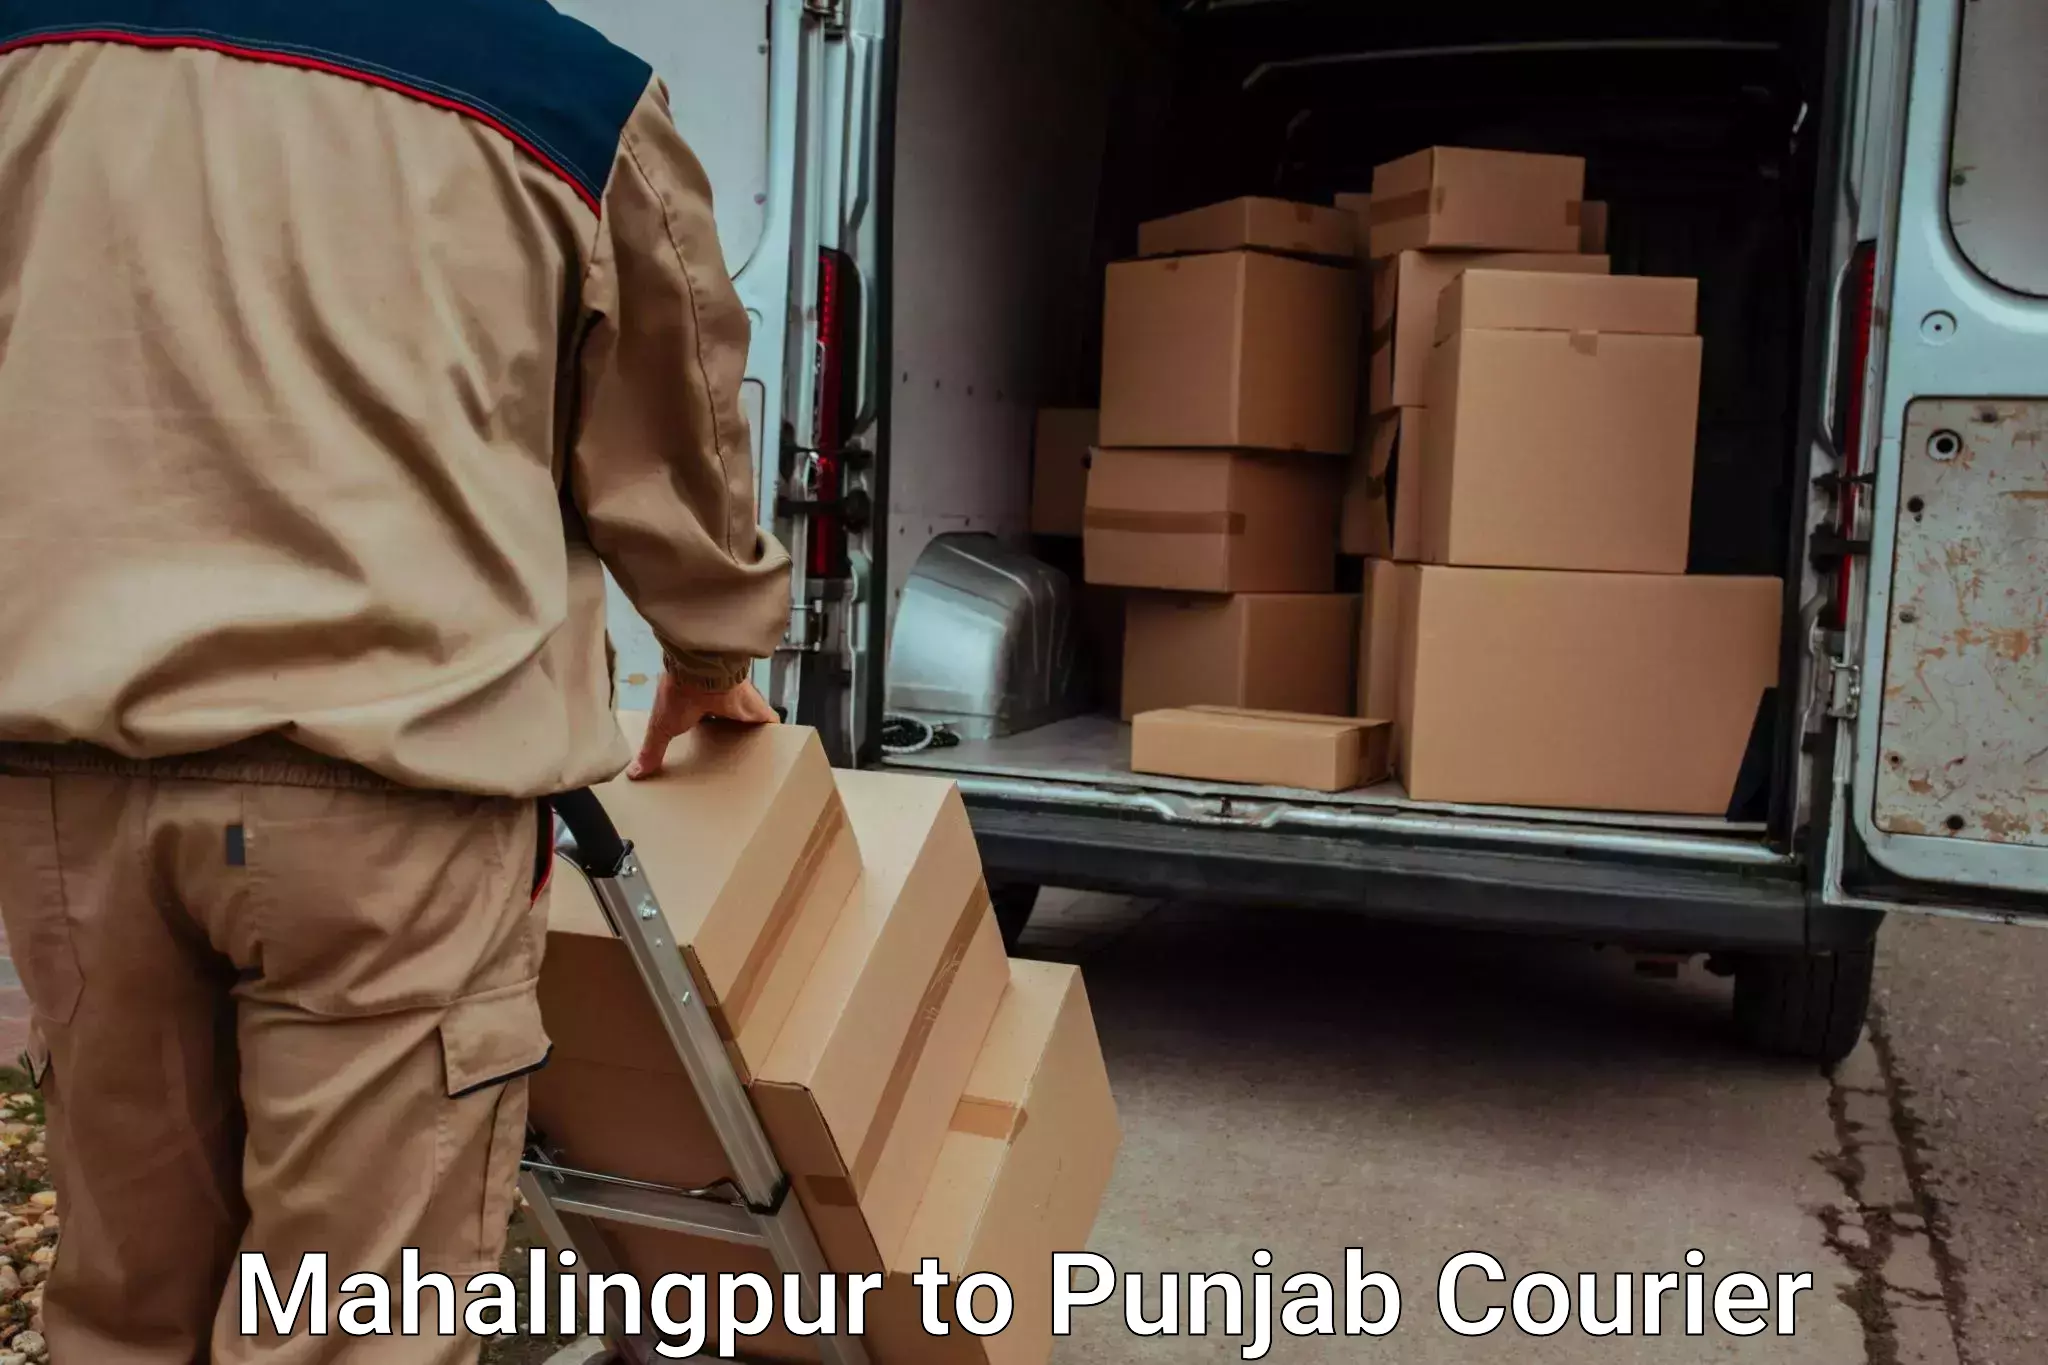 Urgent luggage shipment Mahalingpur to Punjab